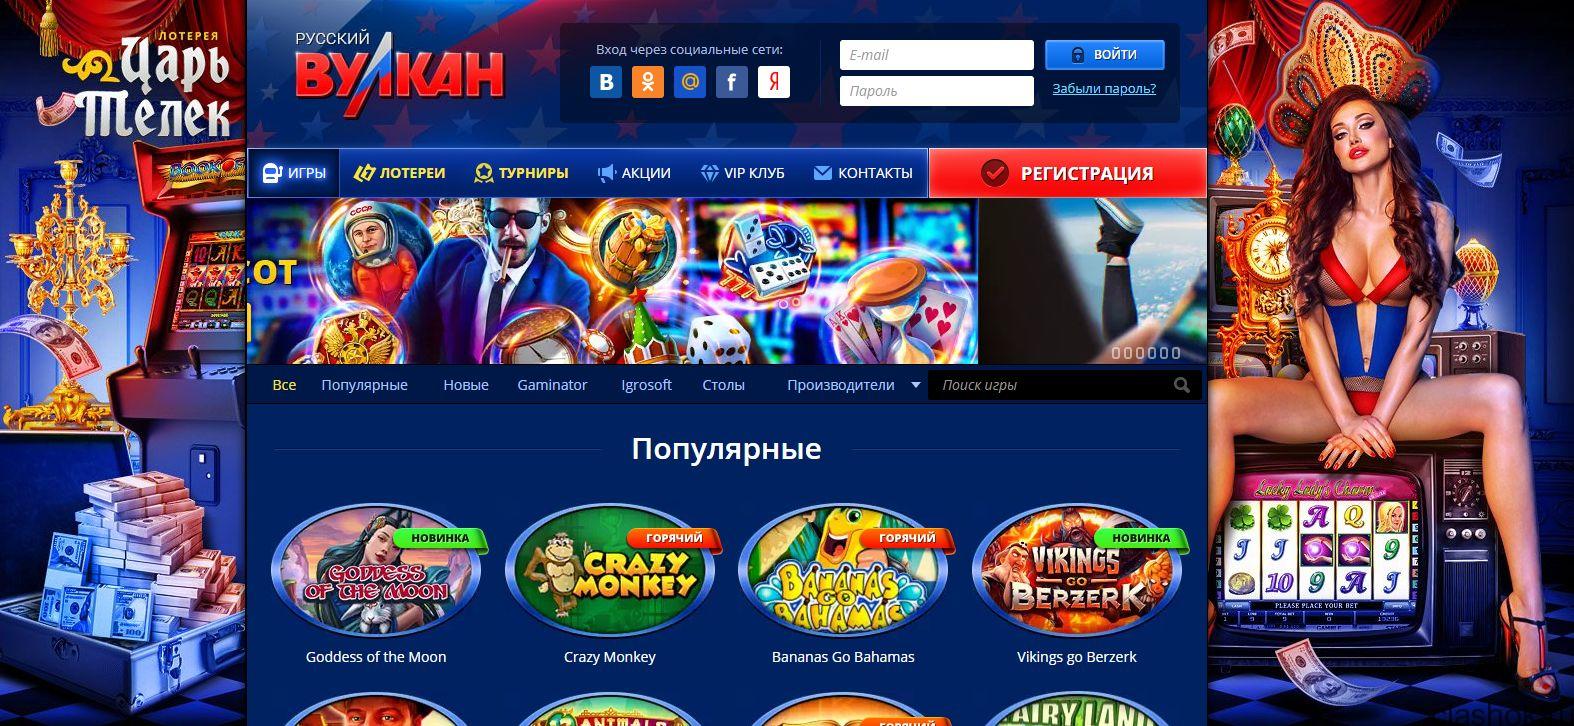 Казино Вулкан Россия - играть бесплатно в автоматы Vulkan Russia